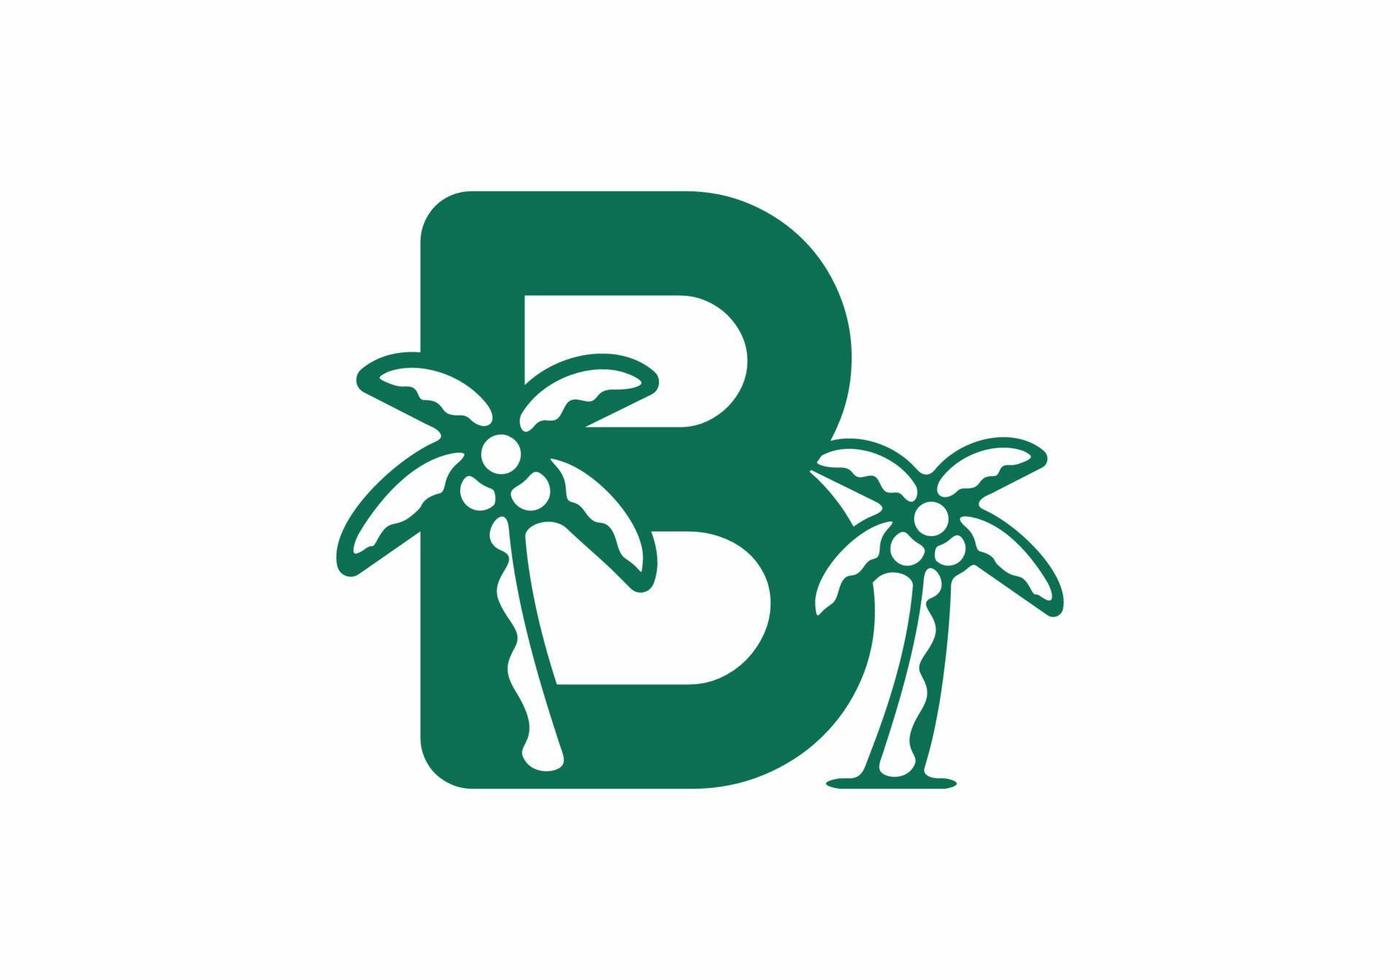 groene kleur van b beginletter met kokospalm vector